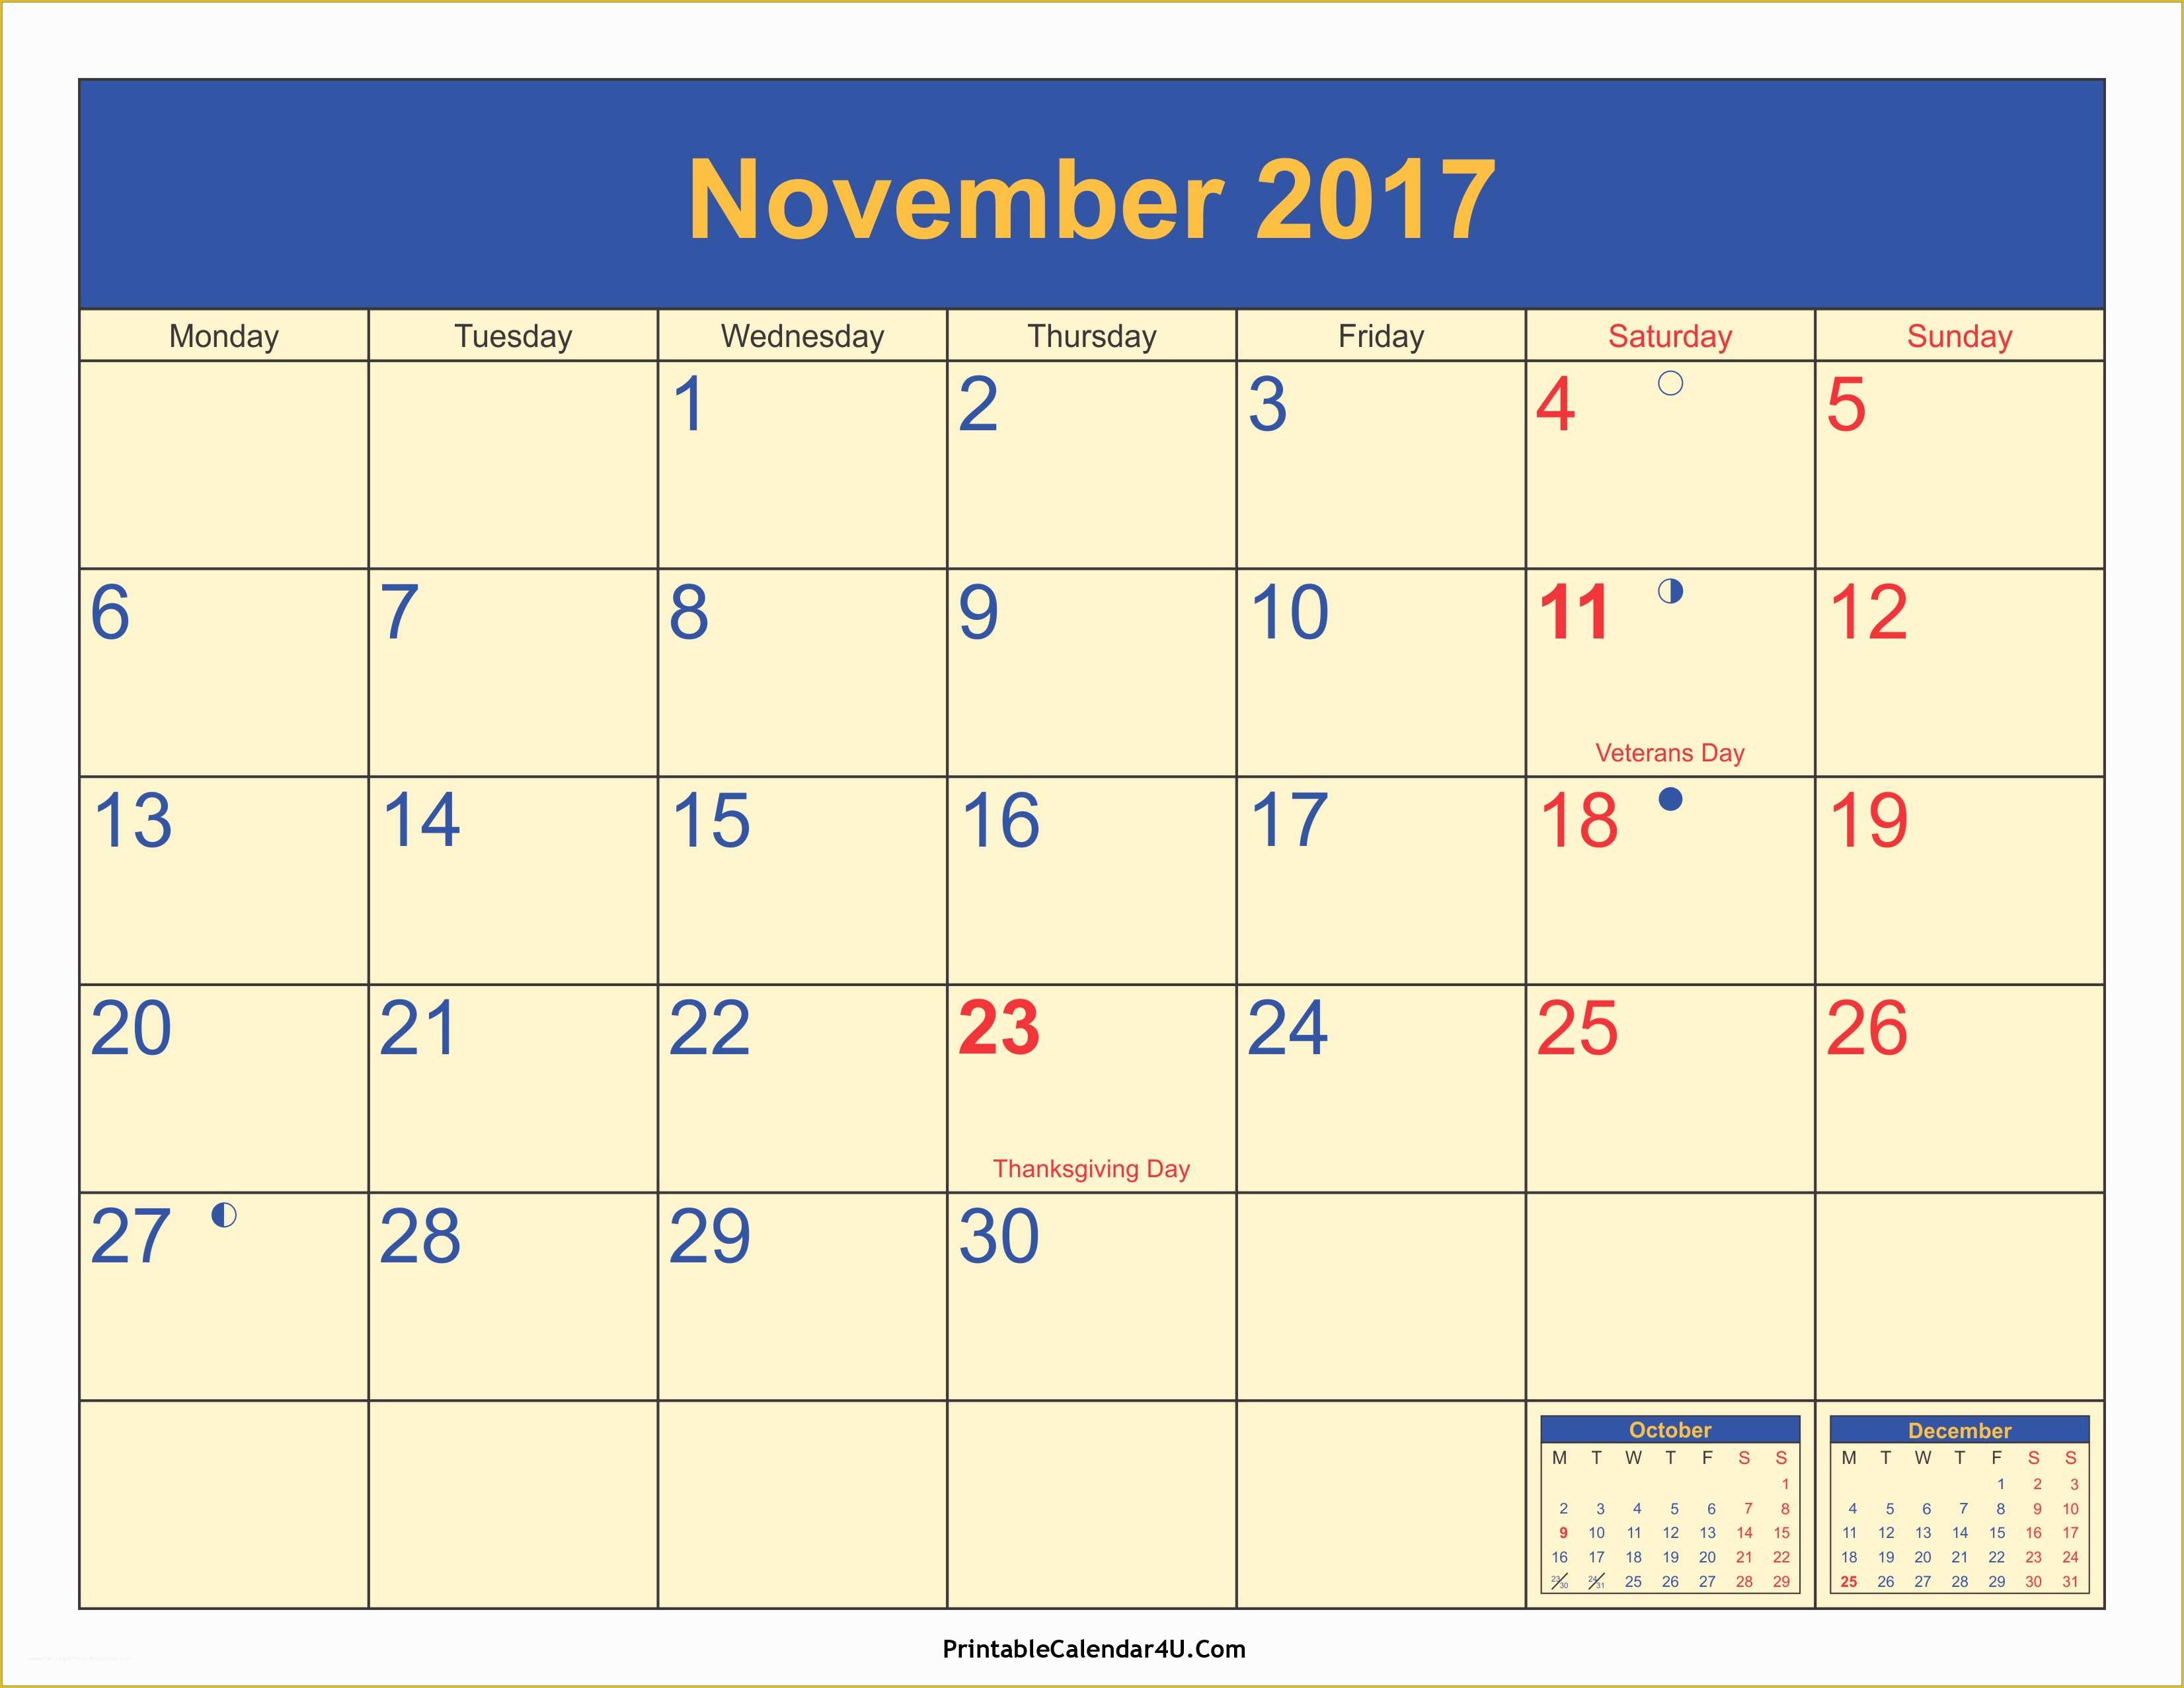 Free Calendar Template 2017 November Of November 2017 Calendar with Holidays